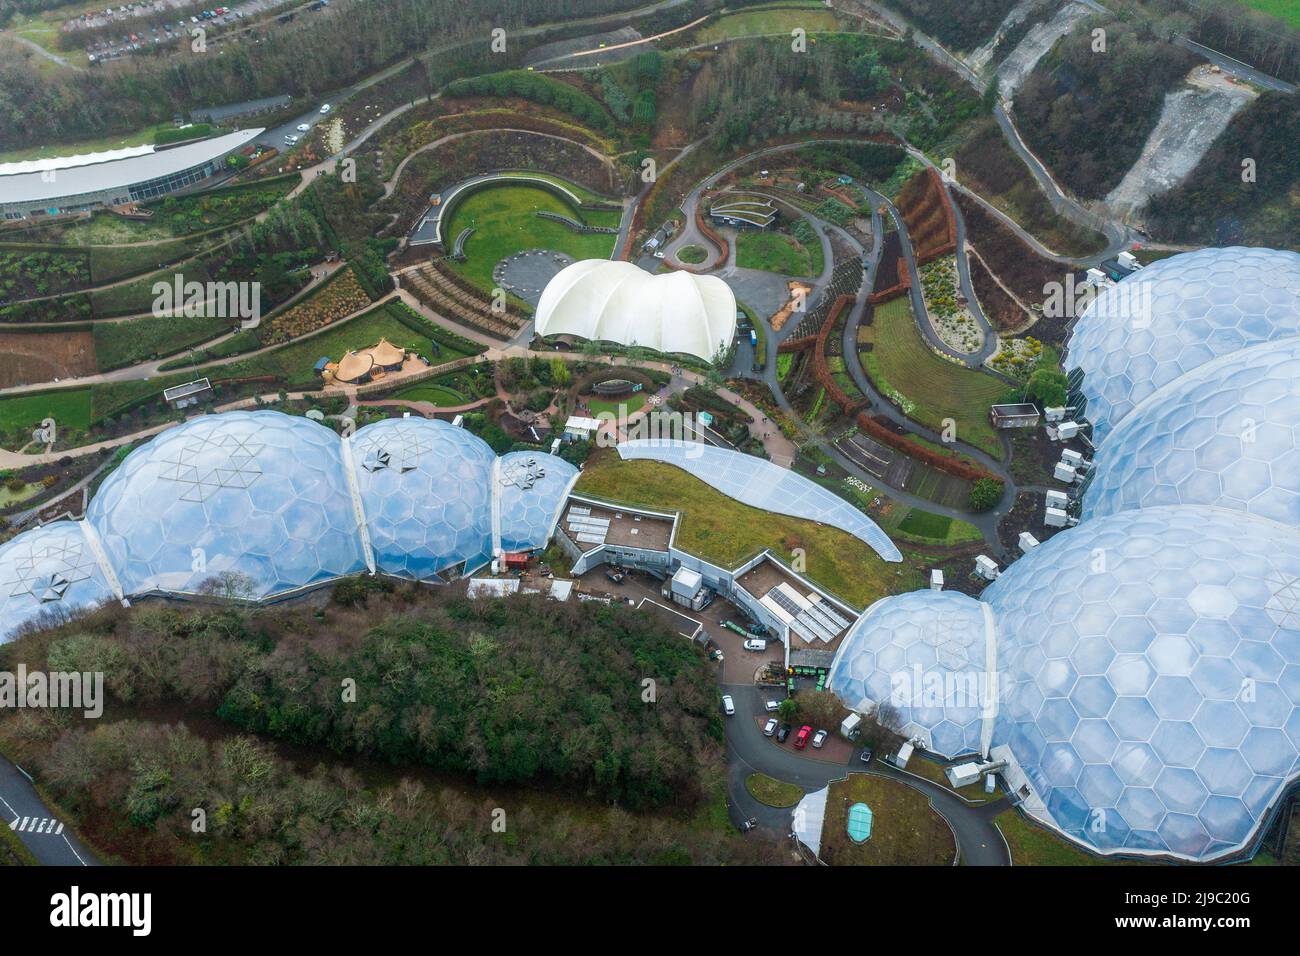 Una vista aerea della sfera da golf come le cupole di questo iconico luogo di conservazione in Cornovaglia. Foto Stock